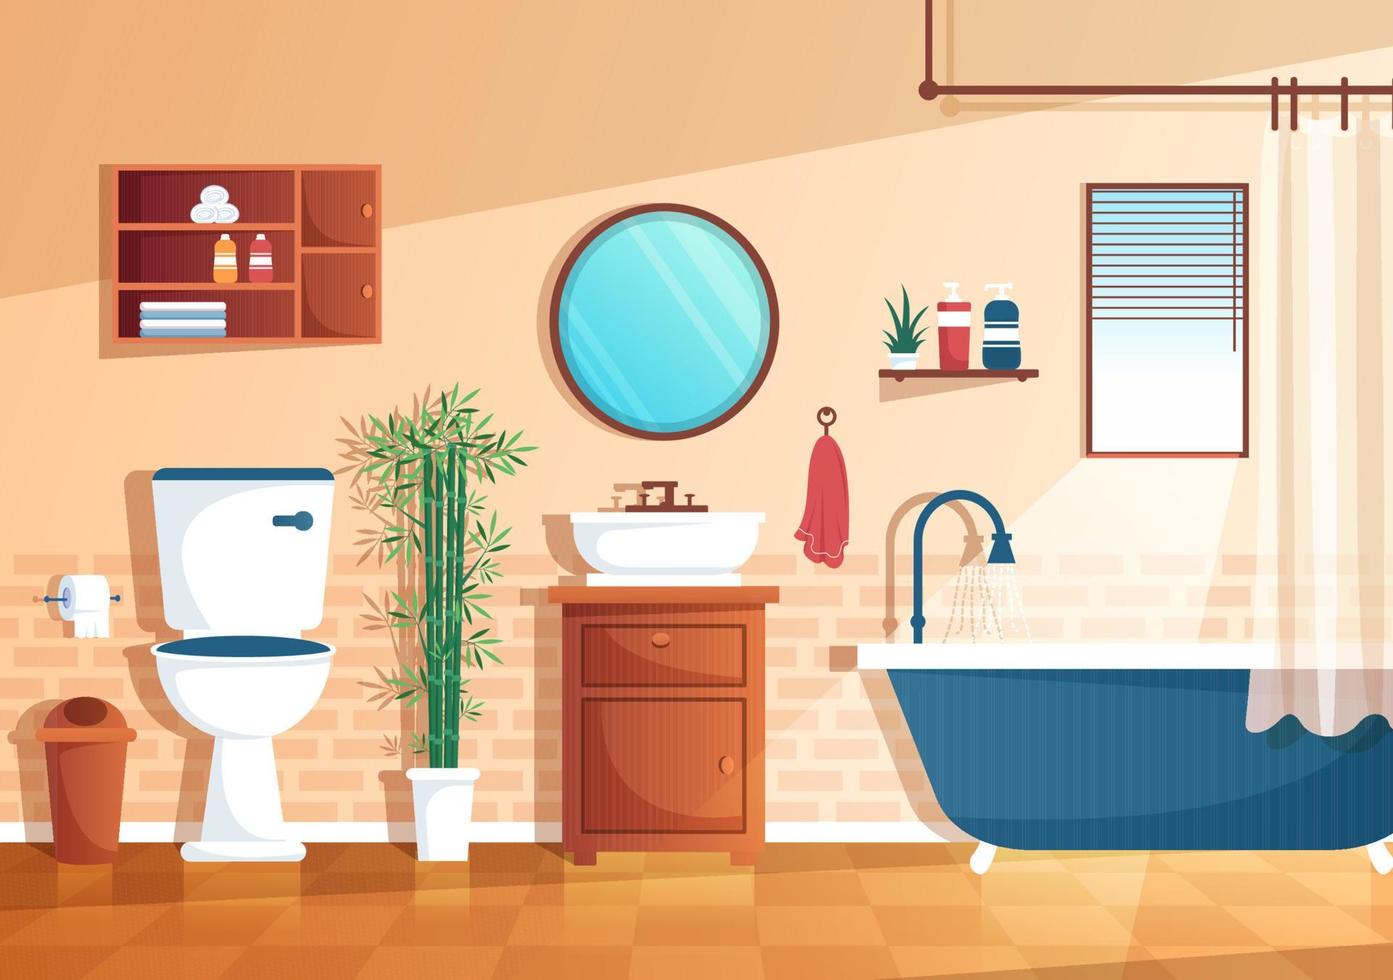 moderne badkamermeubels interieur achtergrond illustratie met badkuip, kraan toilet wastafel om te douchen en op te ruimen in egale kleurstijl vector